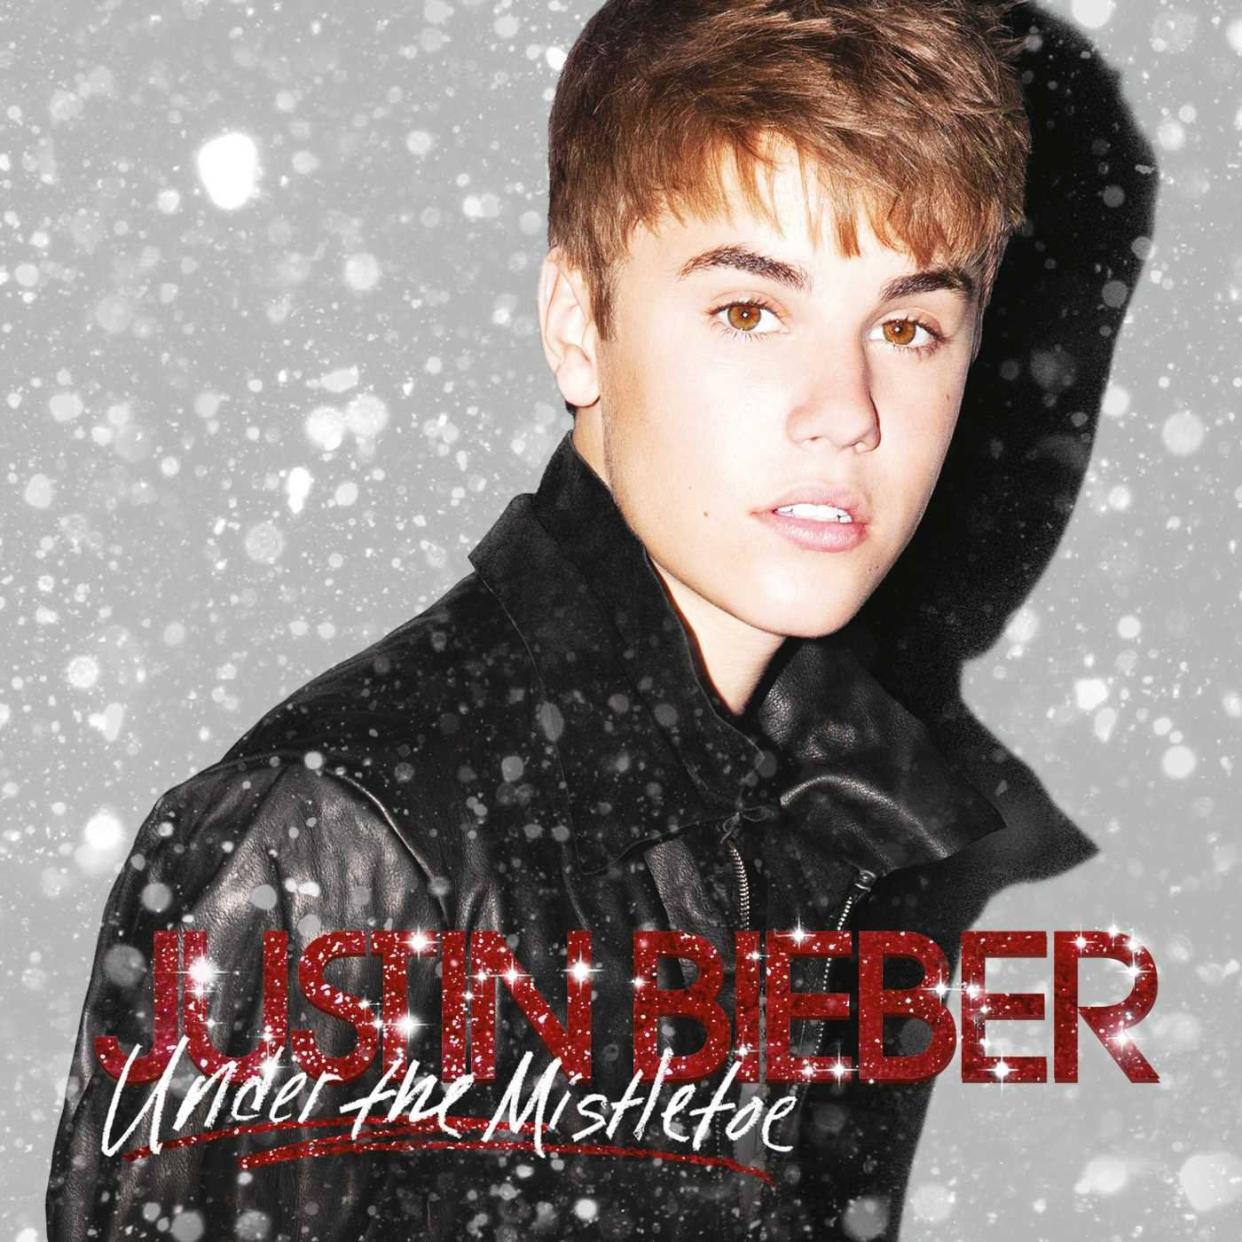 ‘Mistletoe’ by Justin Bieber